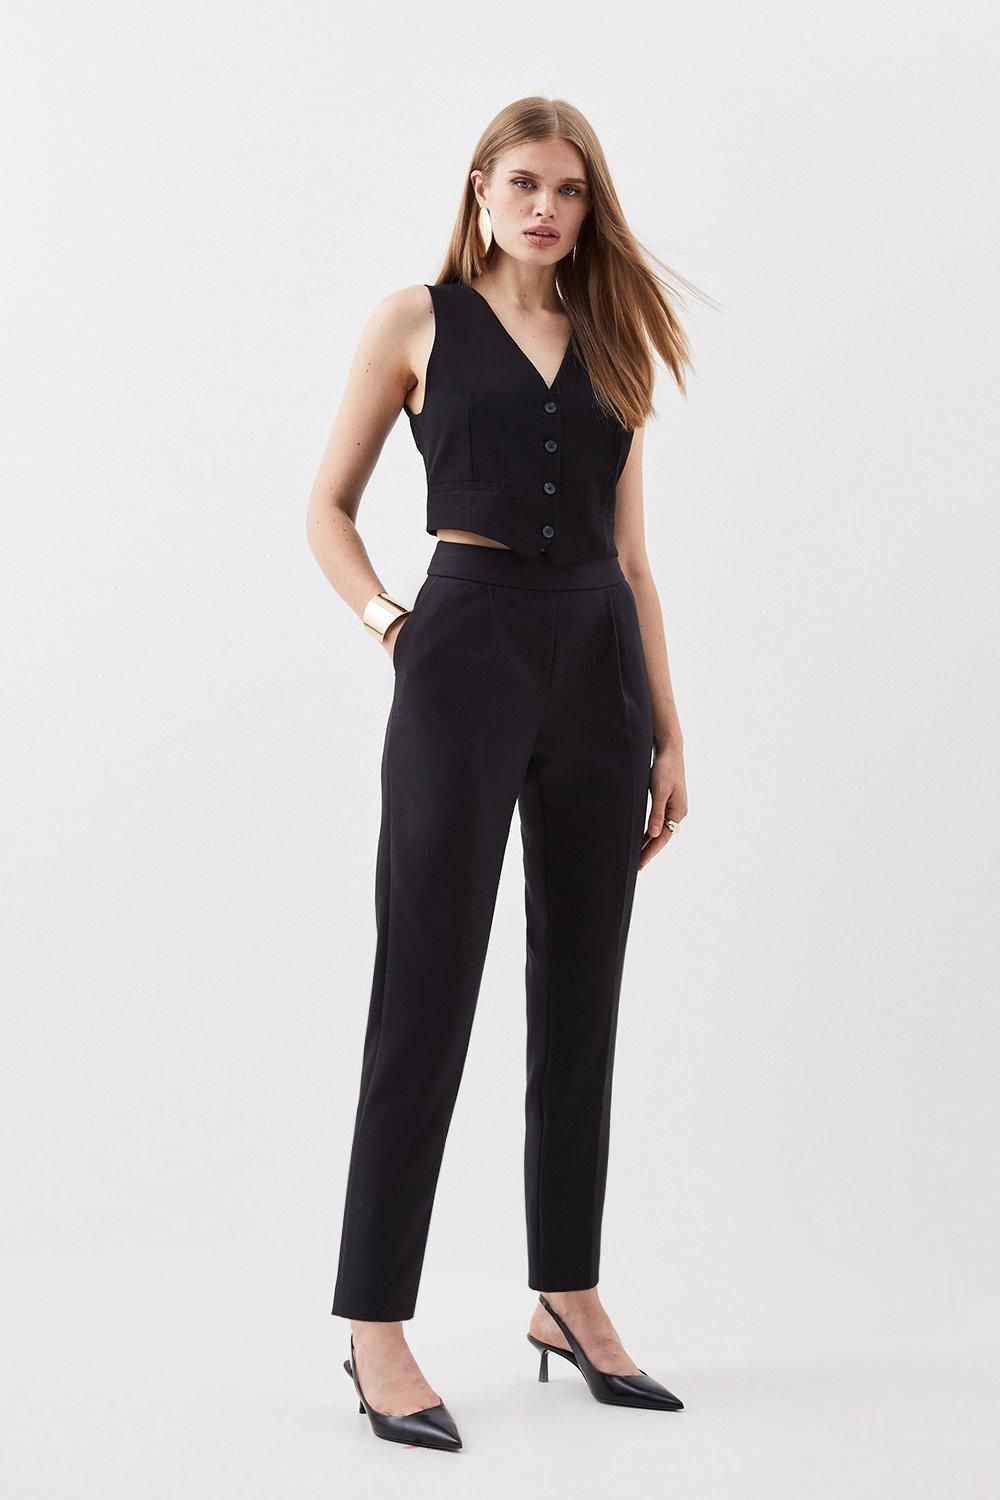 Compact Stretch High Waist Tailored Trousers | Karen Millen UK + IE + DE + NL